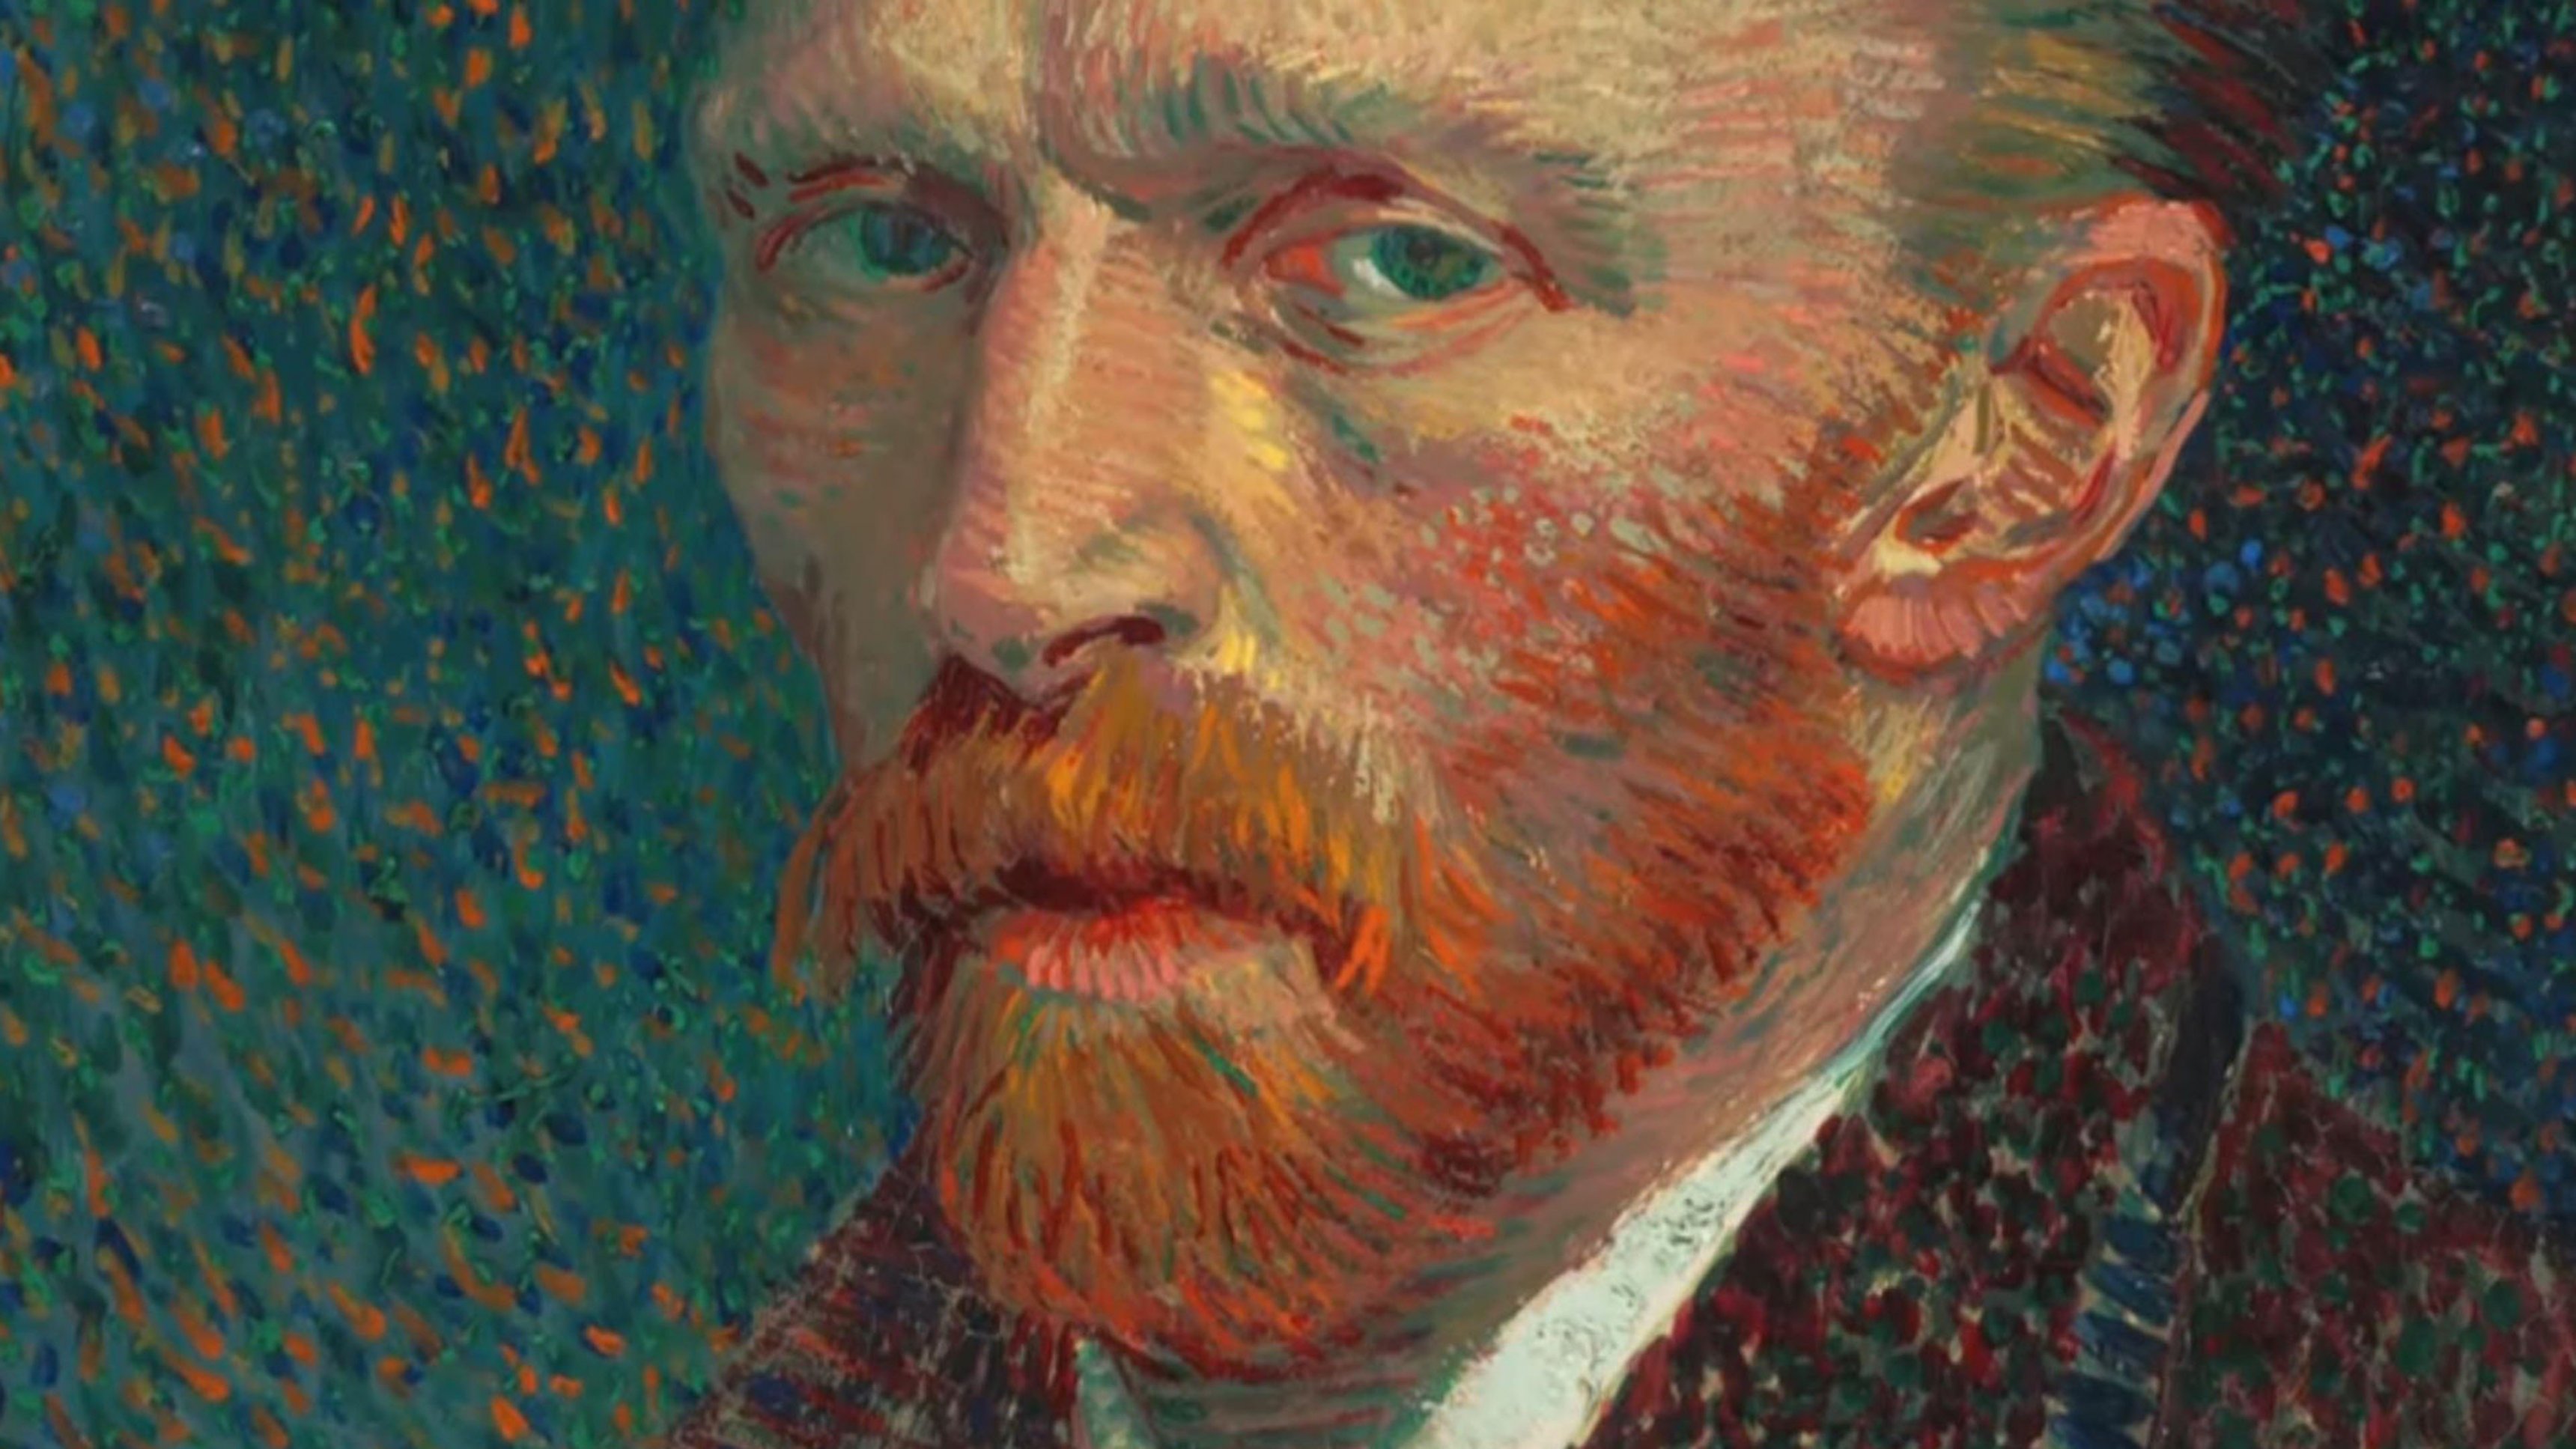 3. Vincent van Gogh